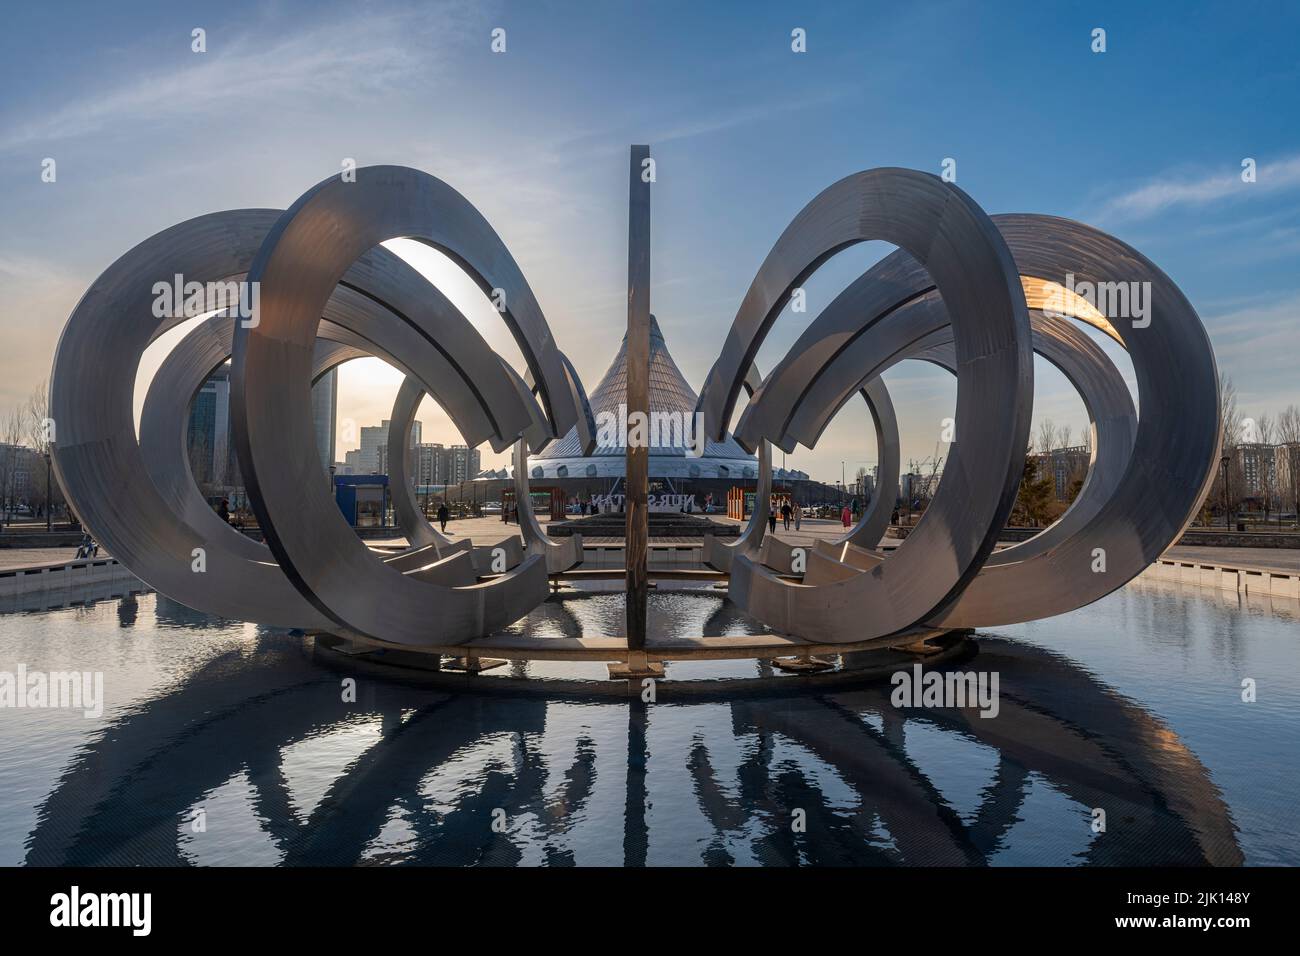 Monument de Lovers Park, Nur Sultan, anciennement Astana, capitale du Kazakhstan, Asie centrale, Asie Banque D'Images